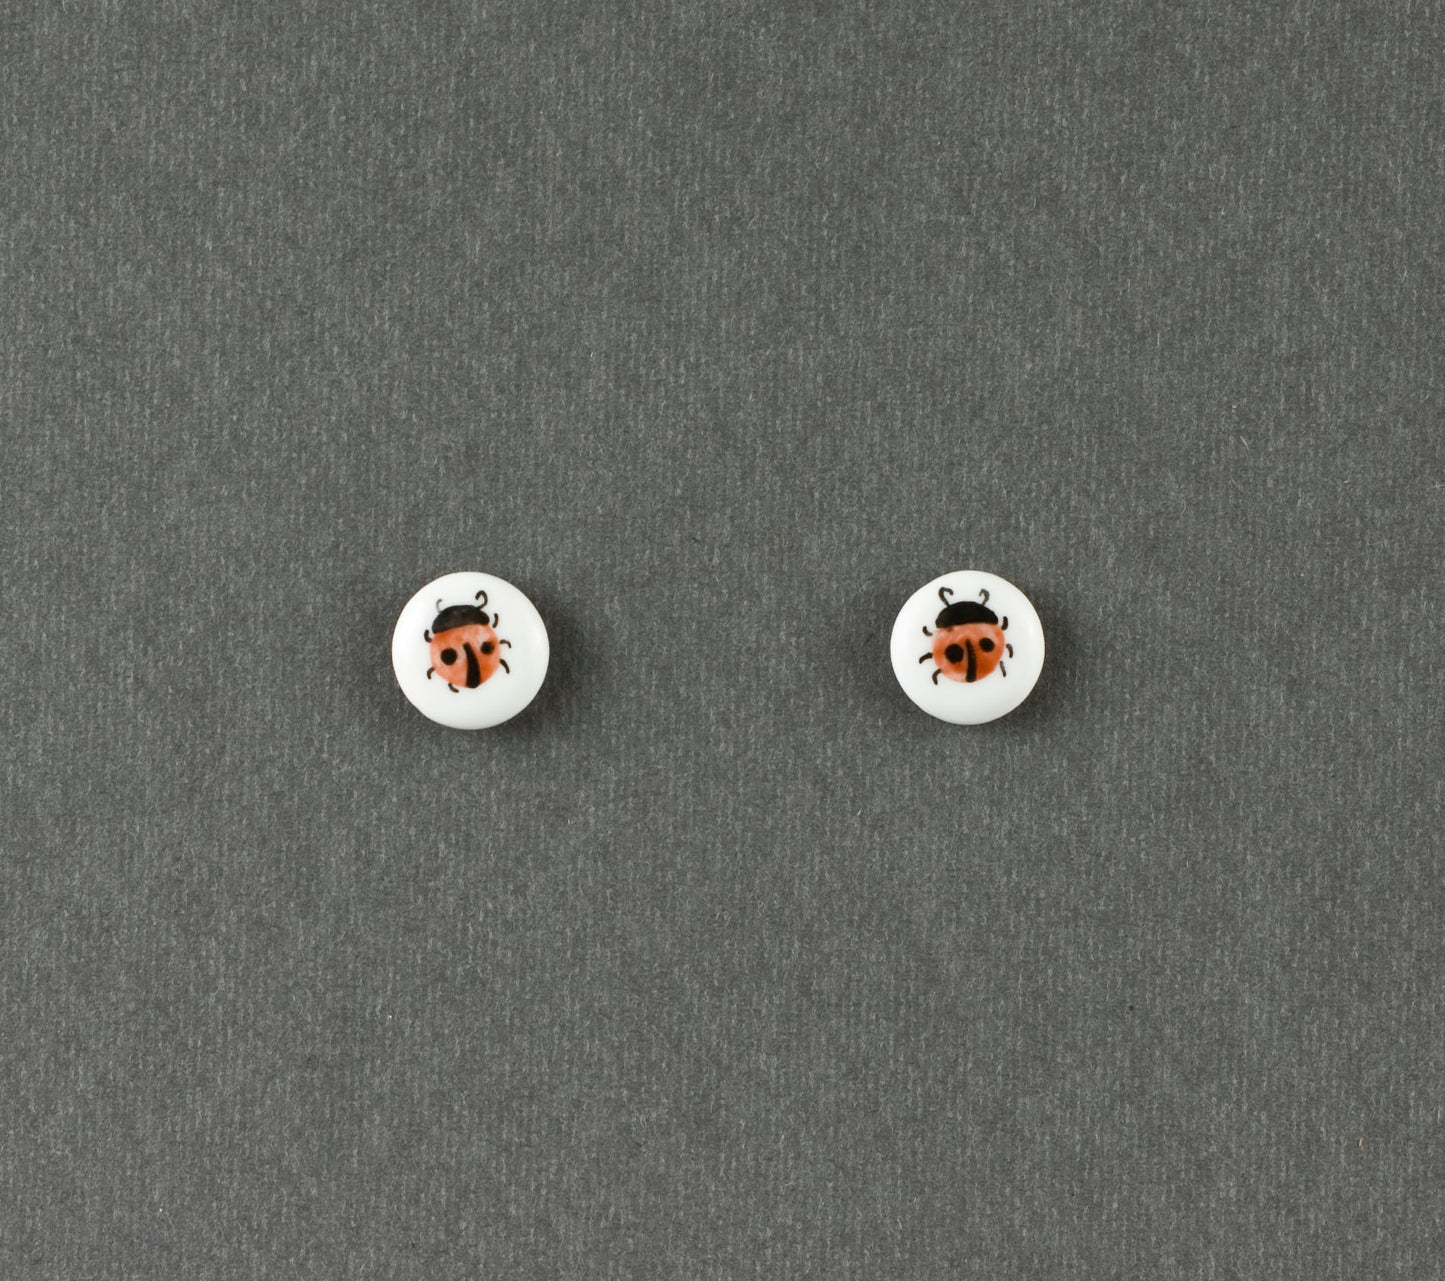 Beetle 1.1. Button S earrings